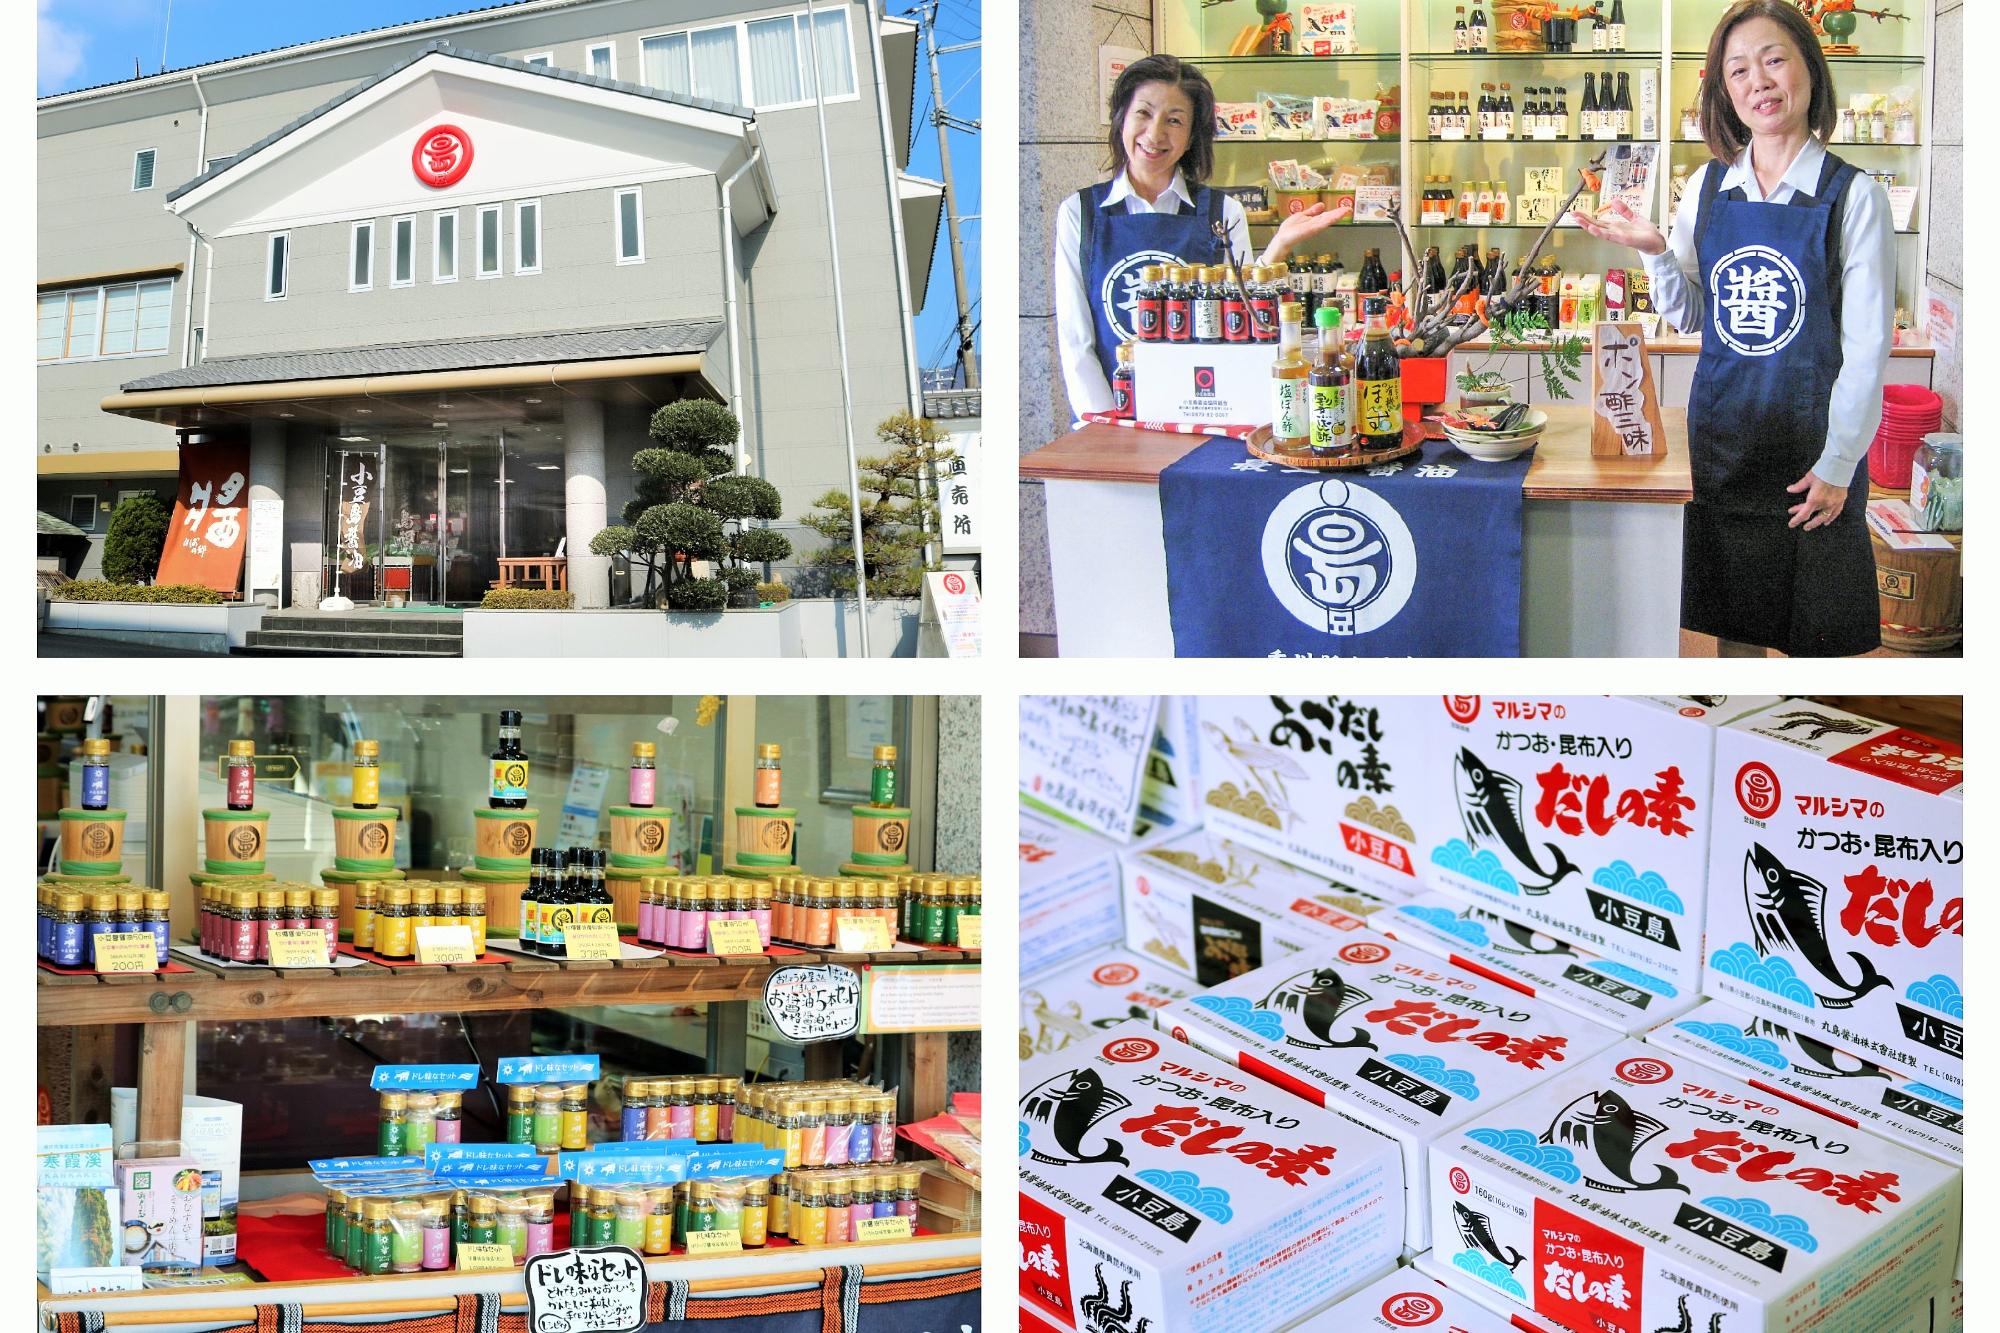 丸島醤油売店と商品の写真